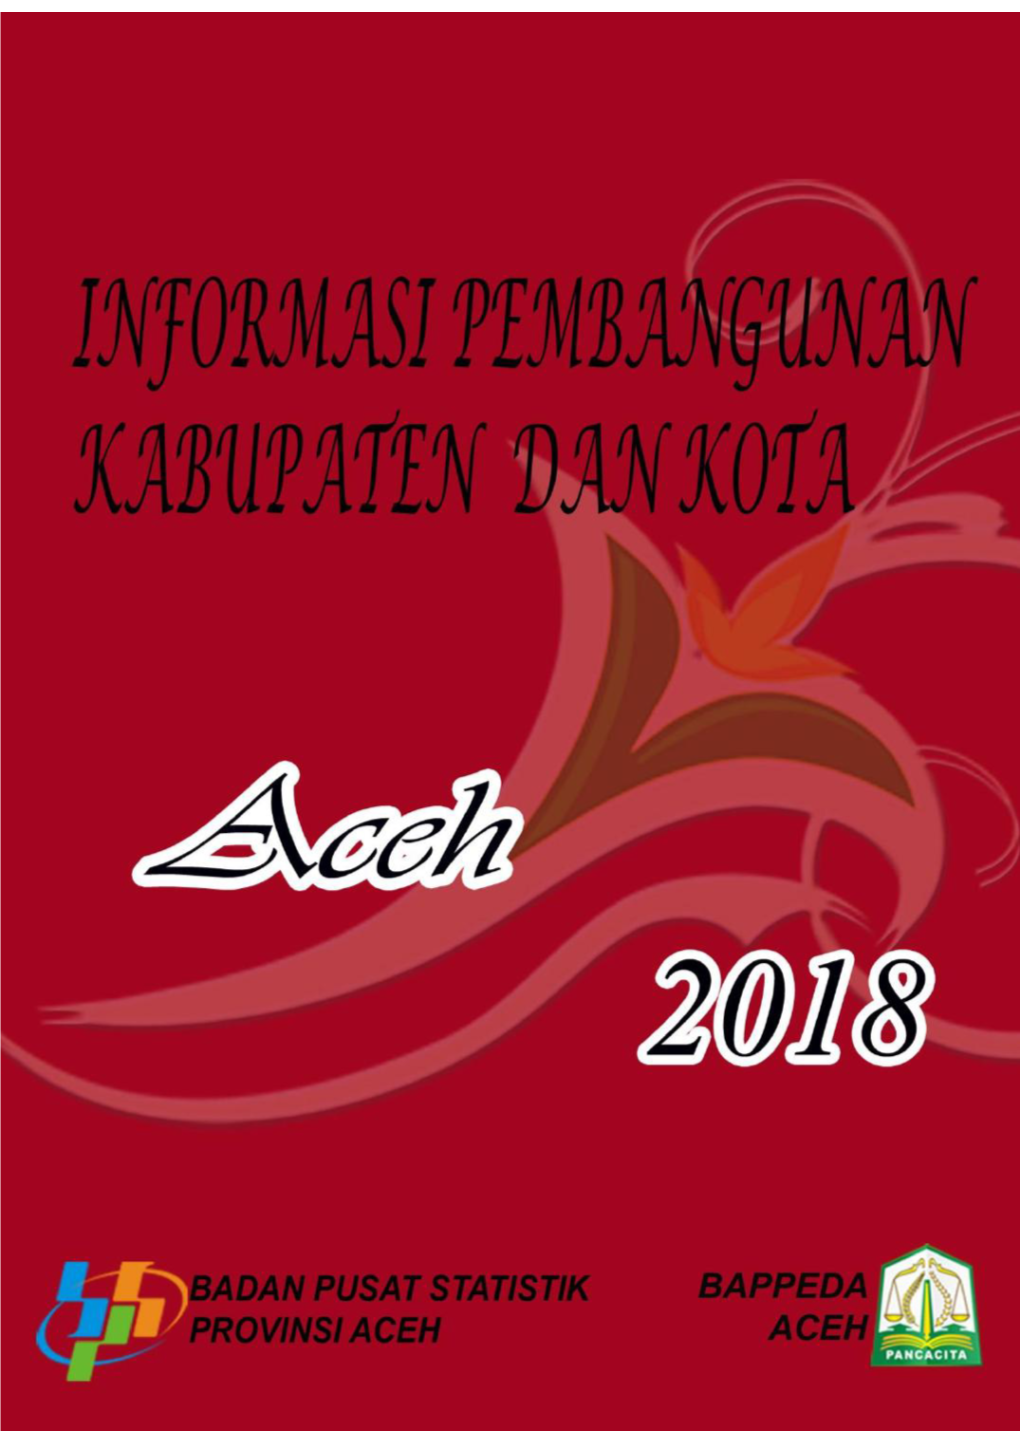 Informasi Pembangunan Kabupaten Dan Kota Aceh 2018